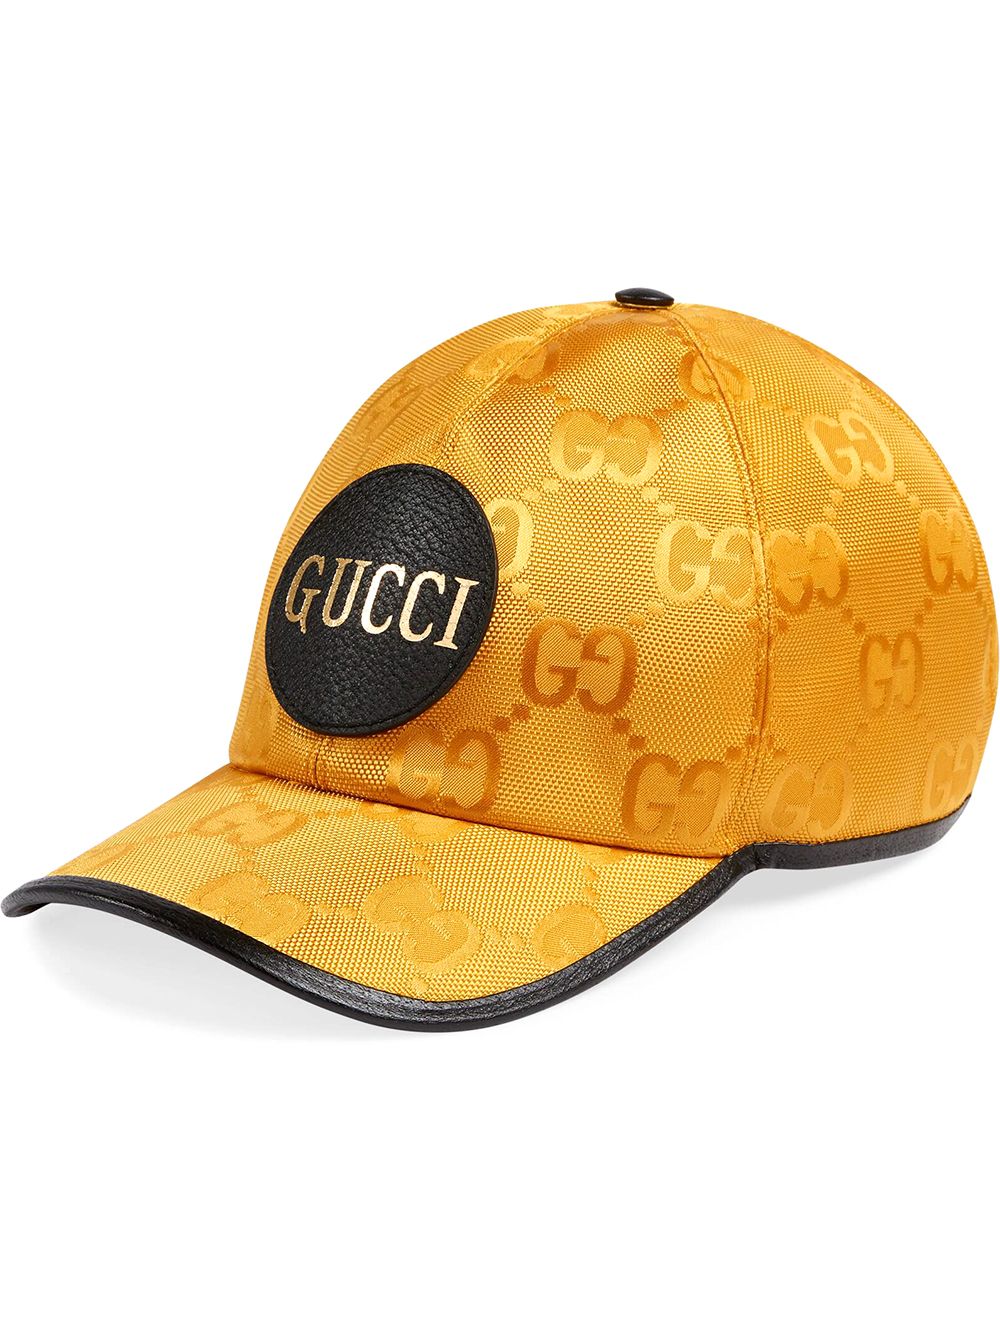 Gucci Off The Grid GG Supreme Canvas Baseball Cap - Farfetch